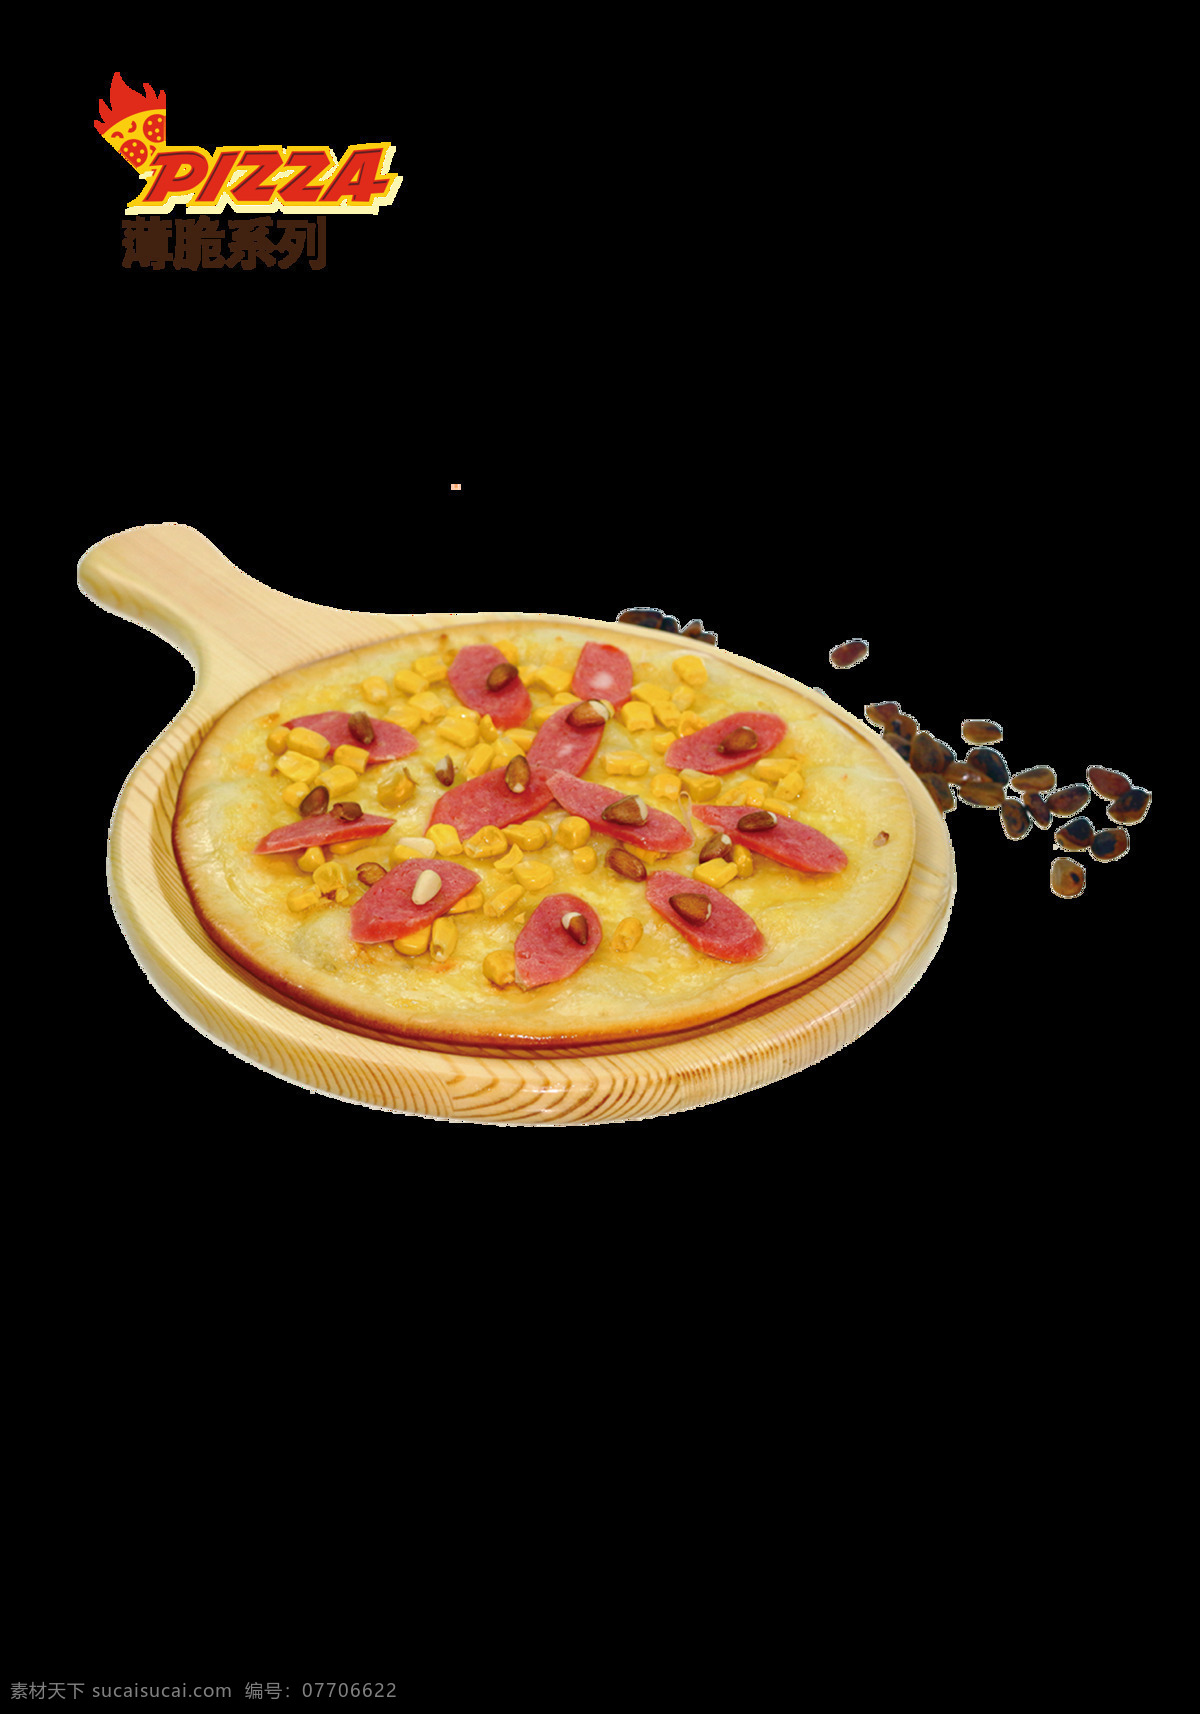 松子香脆披萨 披萨 披萨图片 披萨高清图片 香脆披萨